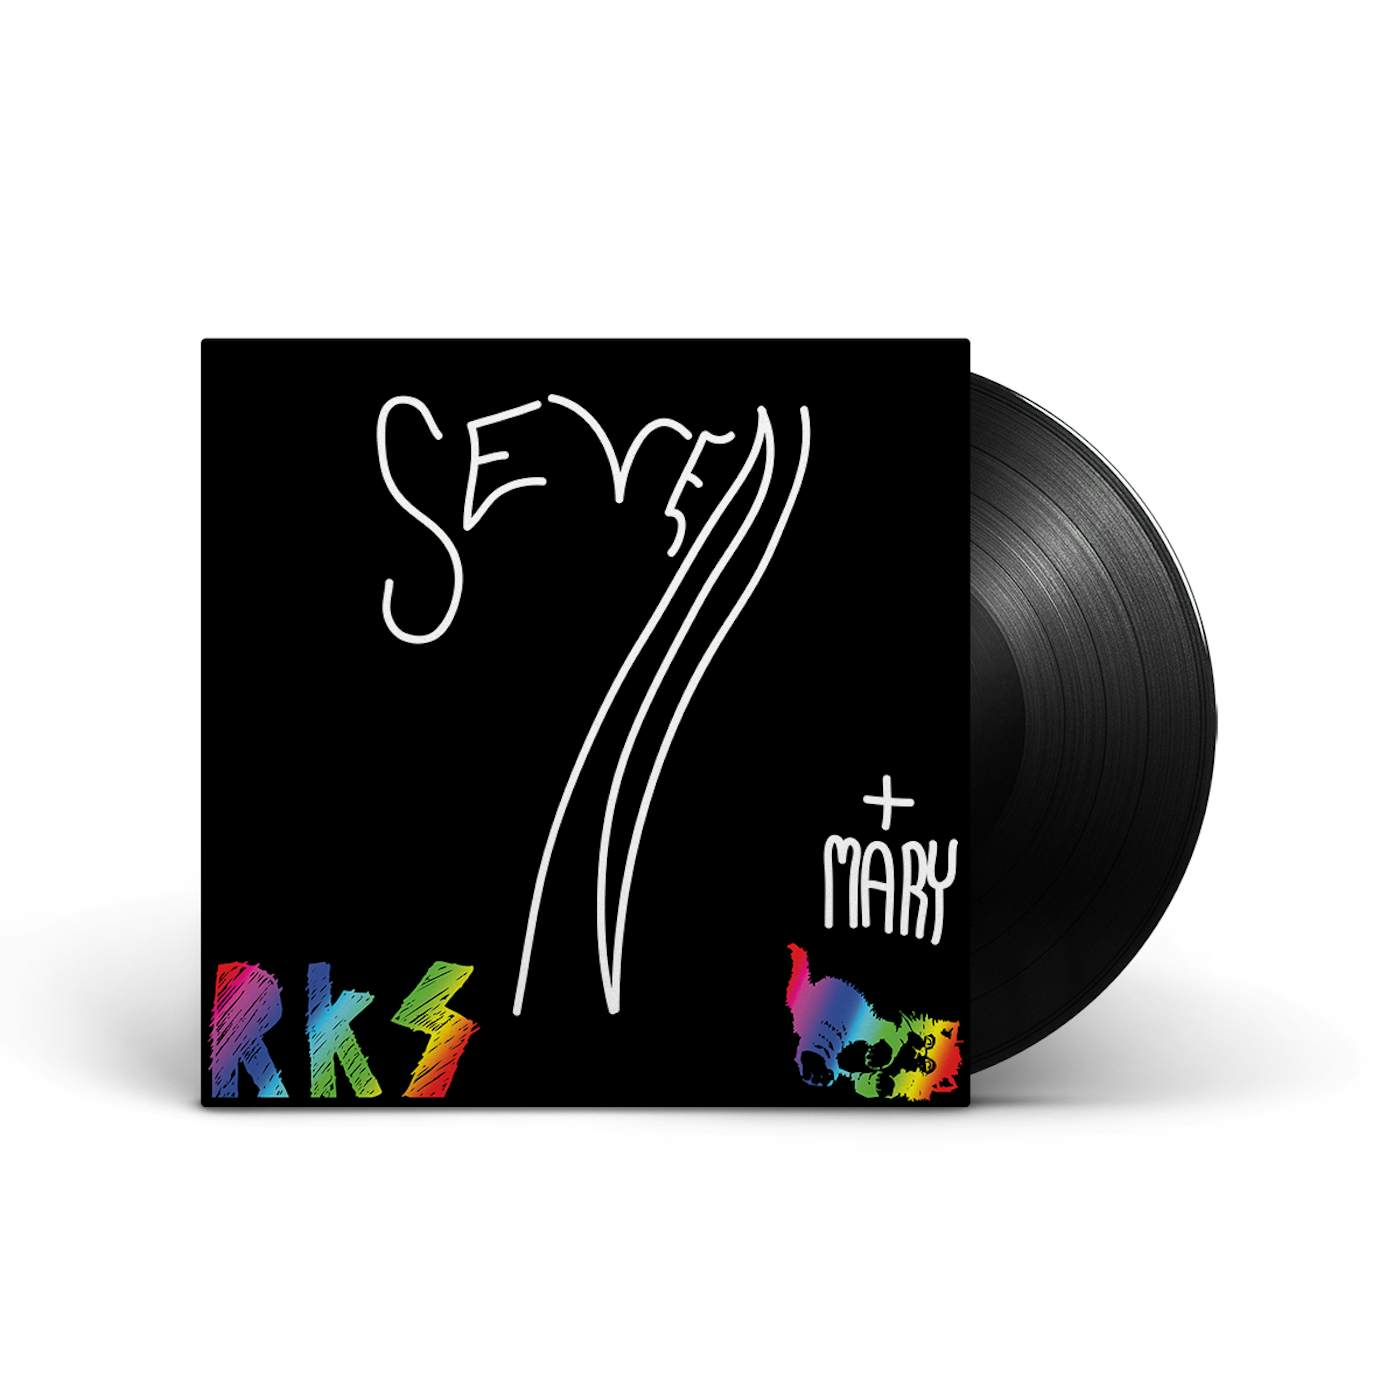 Rainbow Kitten Surprise Seven + Mary LP (Vinyl)